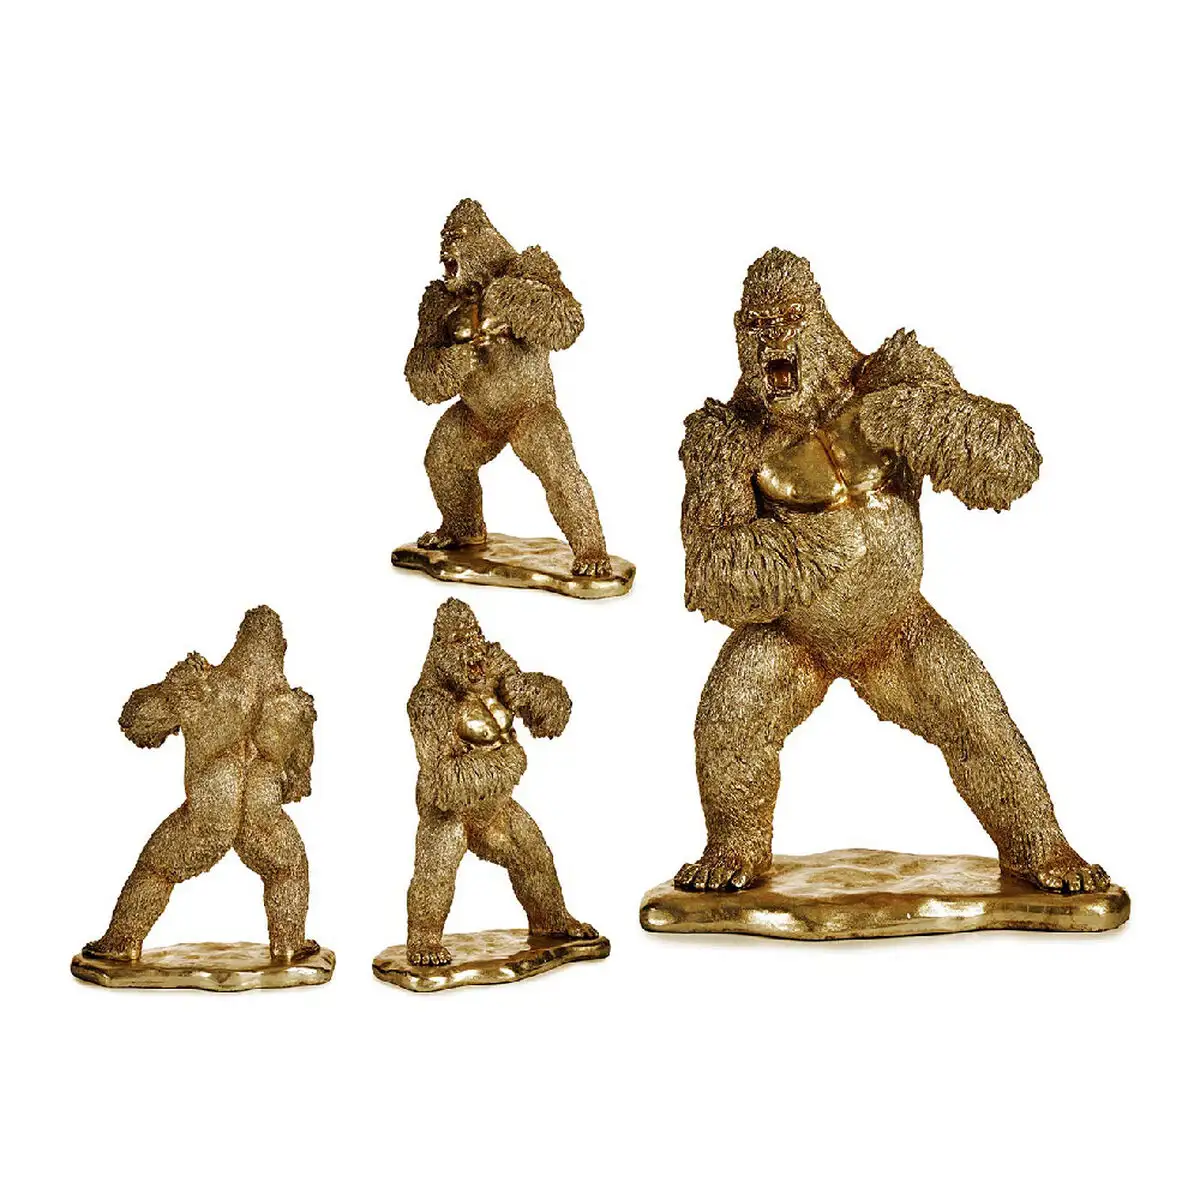 Figurine decorative gorille dore resine 25 x 56 x 42 cm _5131. Entrez dans l'Univers de DIAYTAR SENEGAL - Où Choisir est un Plaisir. Explorez notre gamme variée et trouvez des articles qui parlent à votre cœur et à votre style.